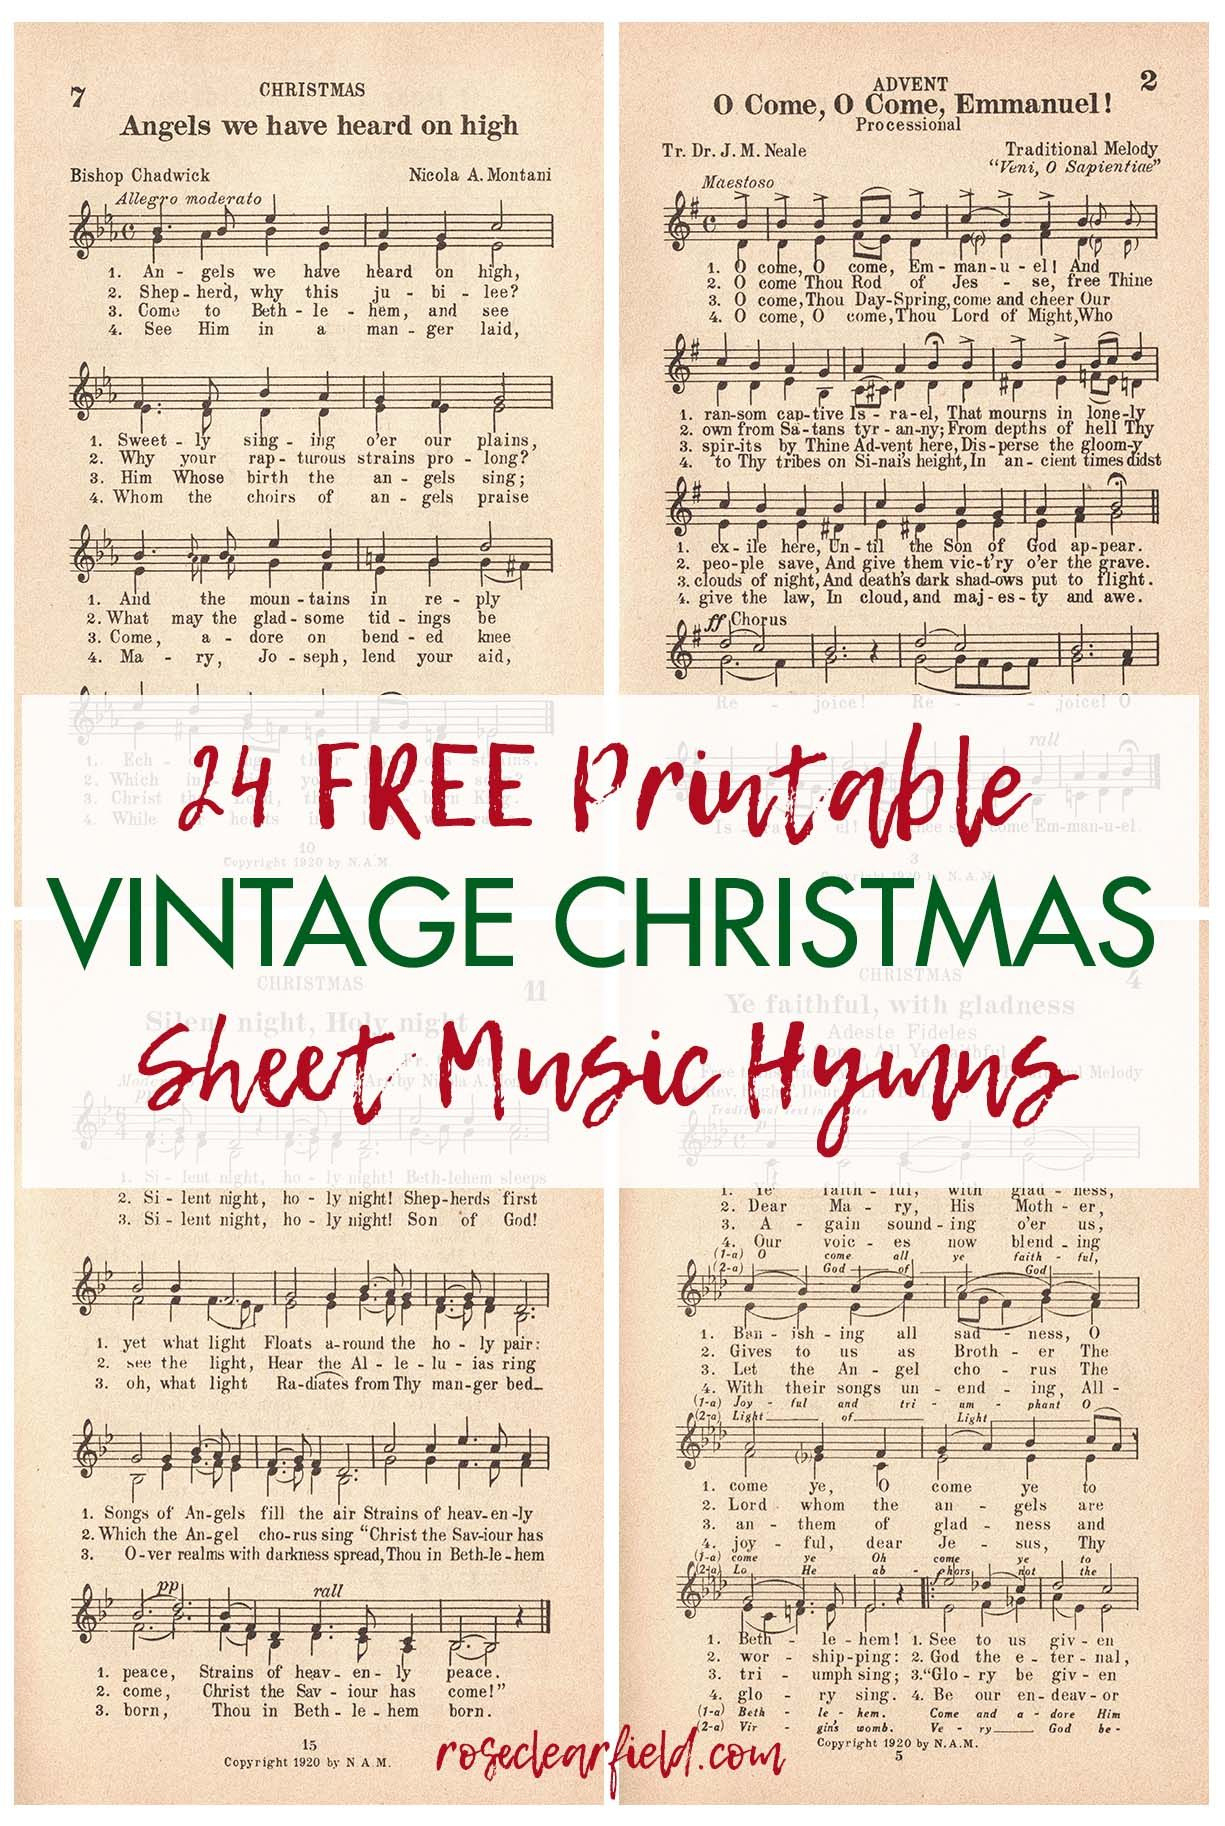 24 Free Printable Vintage Christmas Sheet Music Hymns with Christmas Carols Sheet Music Free Printable